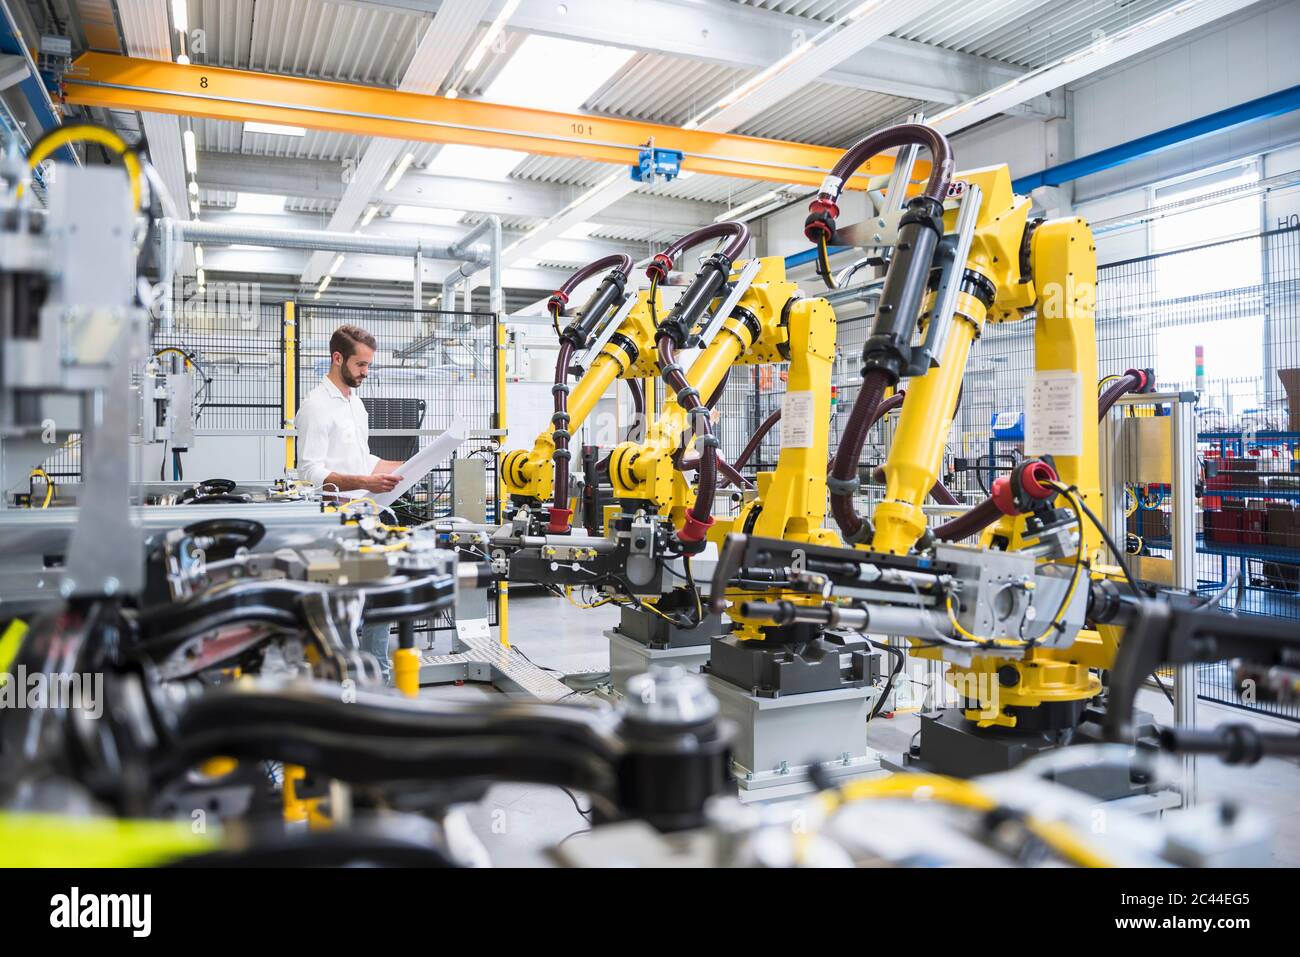 Un jeune ingénieur lisant du papier en se tenant debout près d'armes robotisées dans l'industrie automatisée Banque D'Images